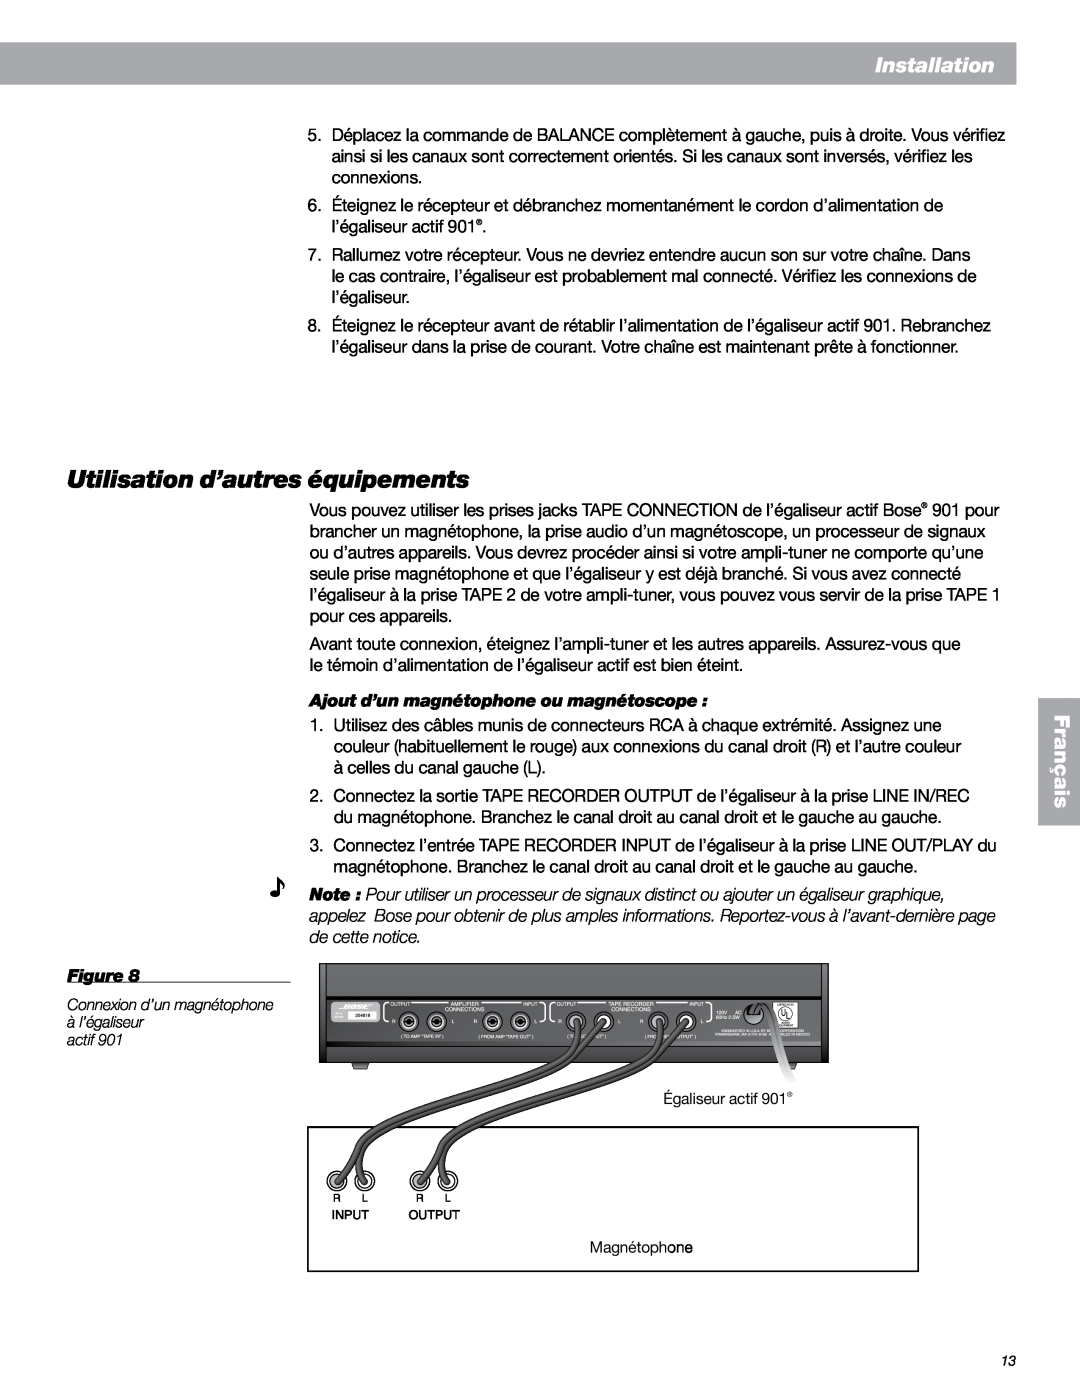 Bose 901 Series VI manual Utilisation d’autres équipements, Installation, Français, Ajout d’un magnétophone ou magnétoscope 